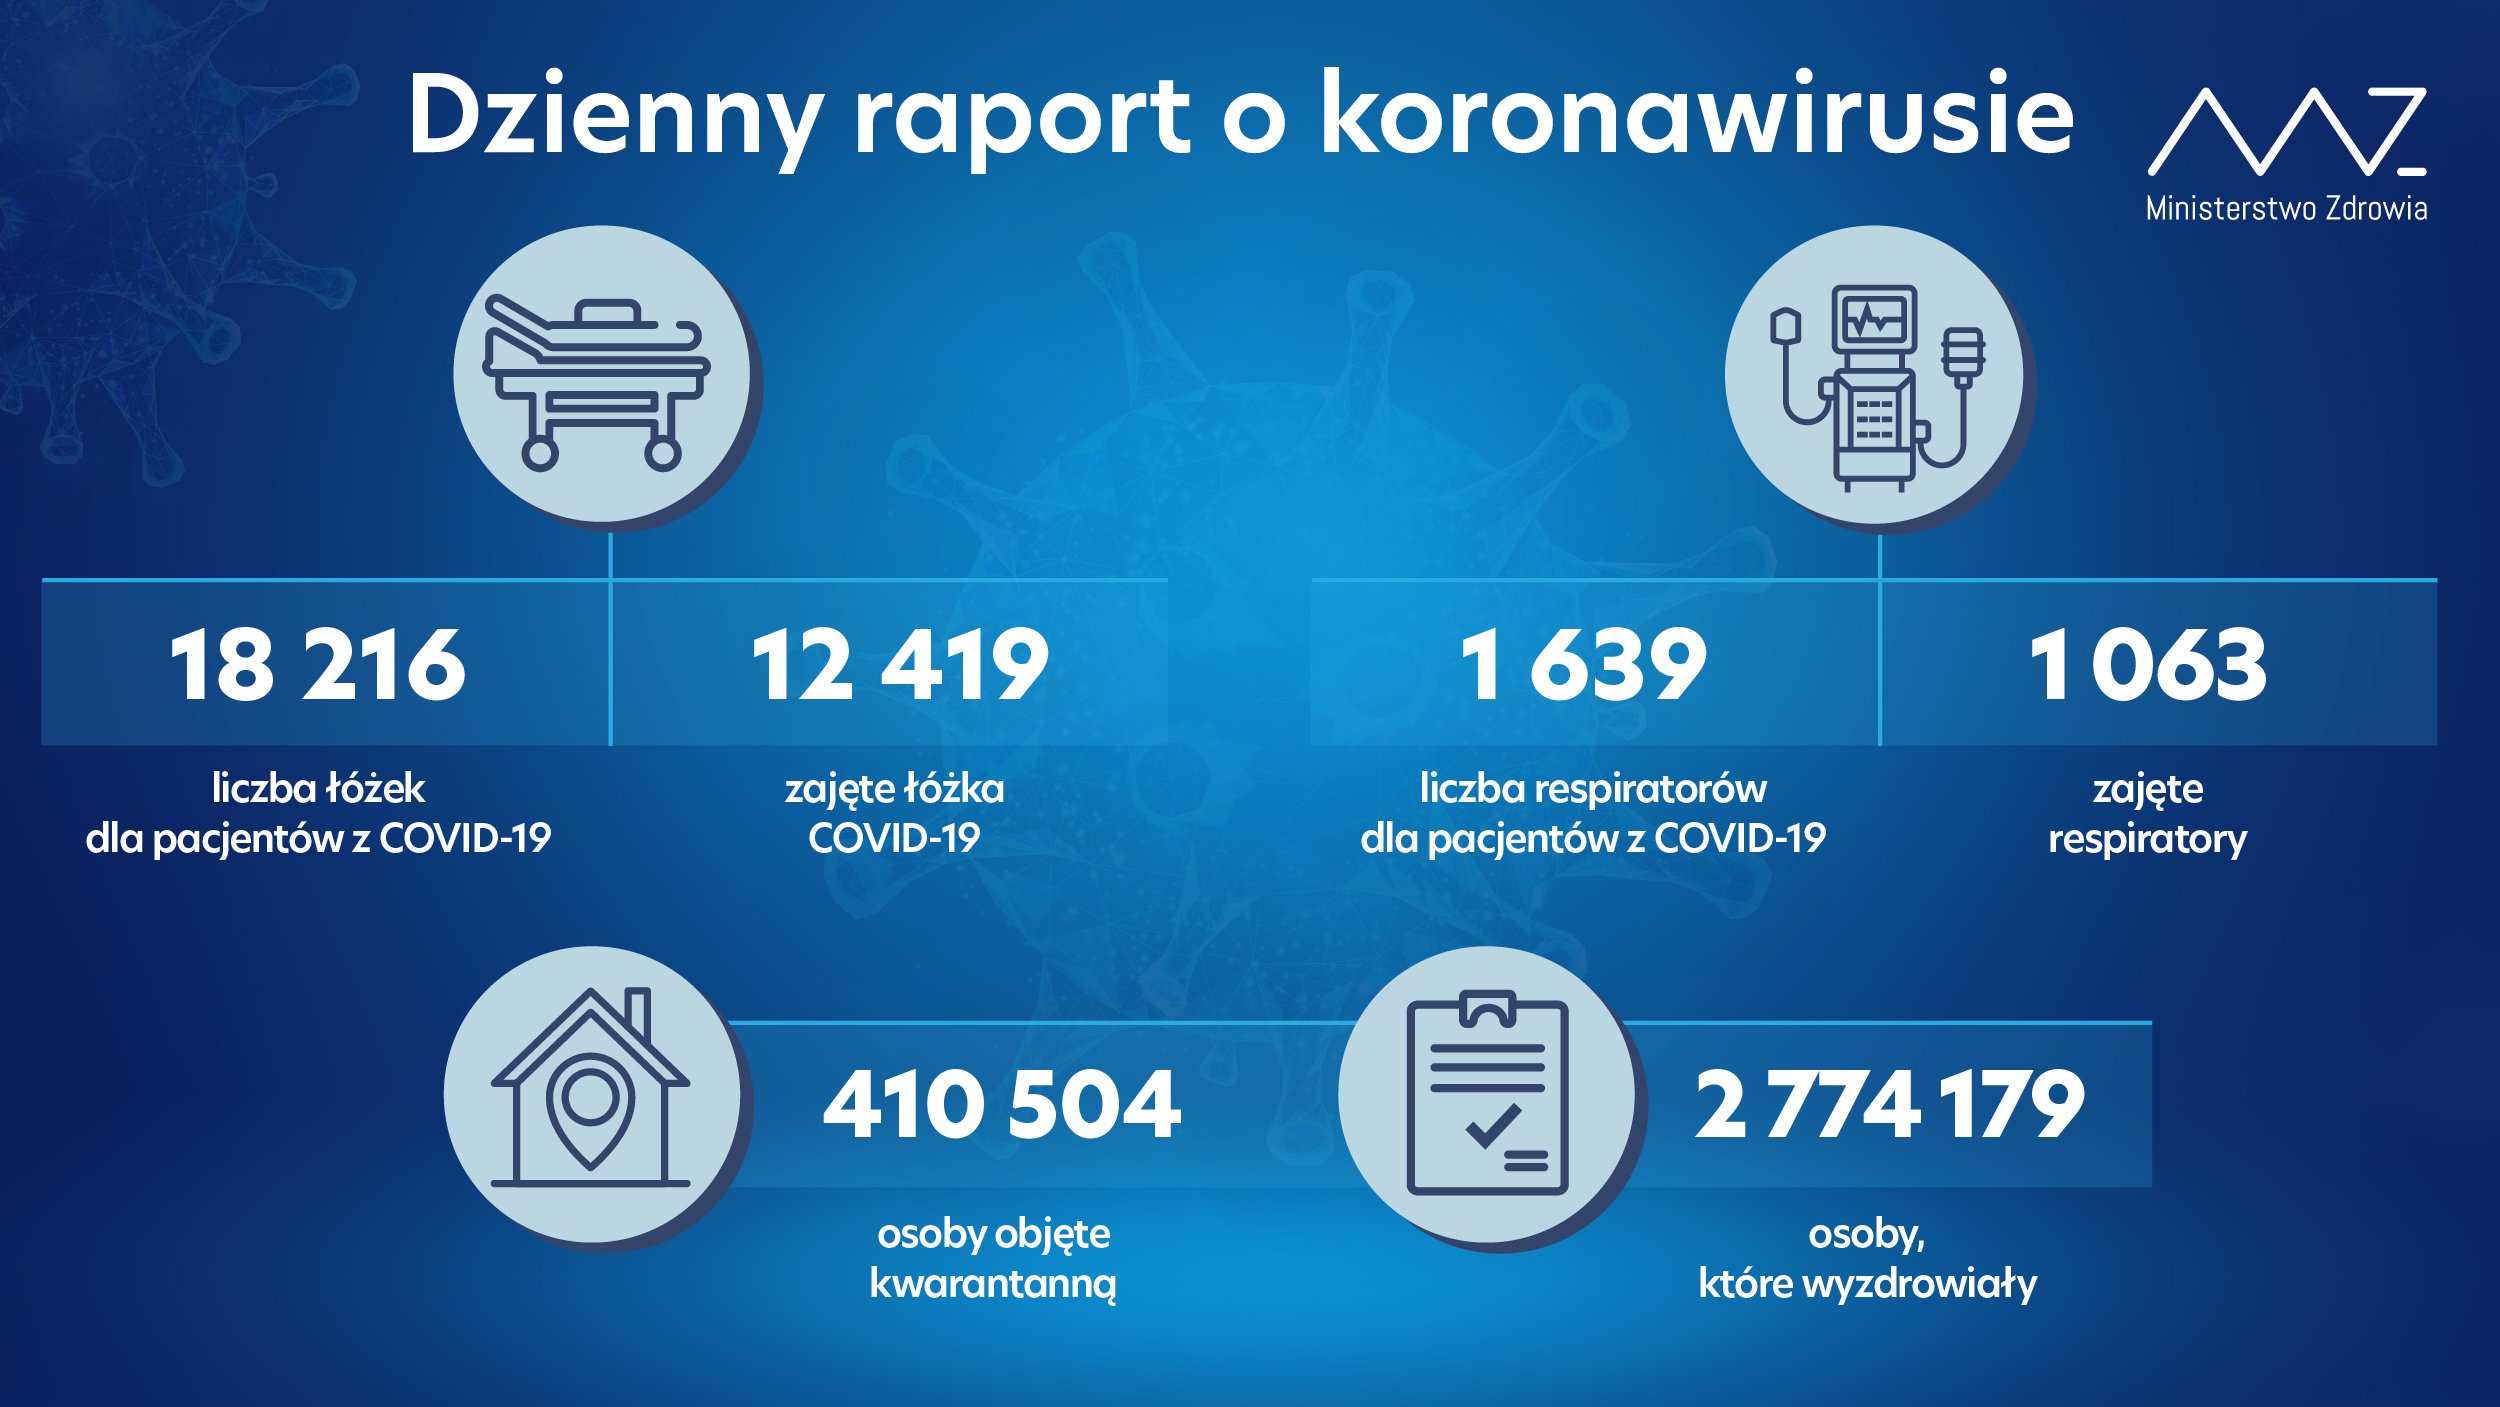 Niemal 13 tys. nowych zakażeń koronawirusem. Najwięcej w woj. mazowieckim